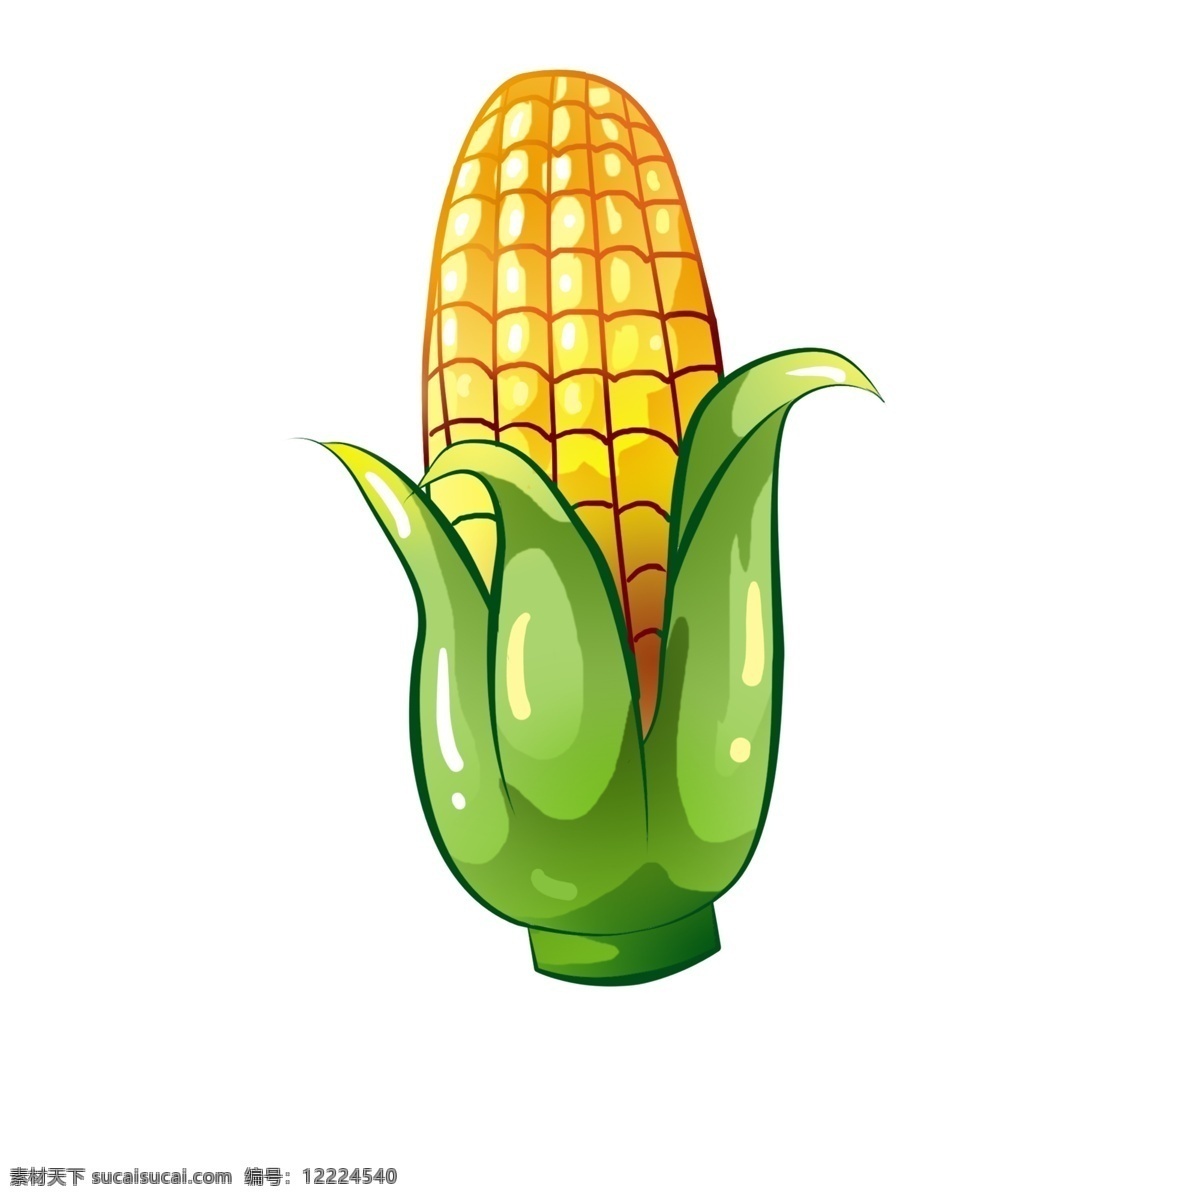 玉米卡通 玉米 蔬菜 健康 美食 简洁 可爱 卡通